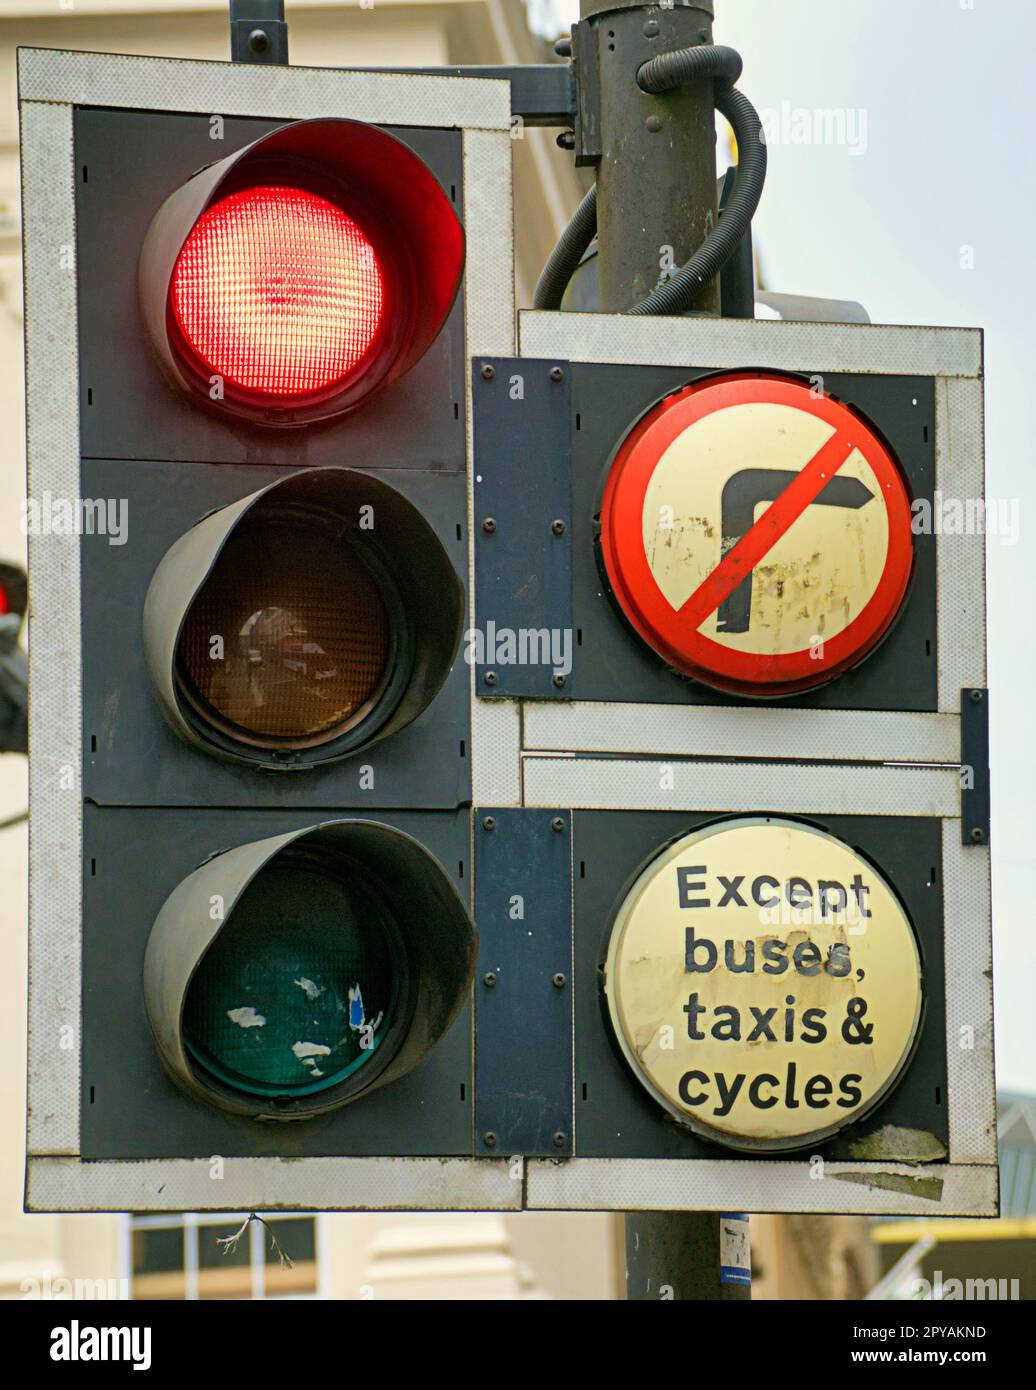 al semaforo rosso non gira a destra tranne che per i taxi e le biciclette Foto Stock